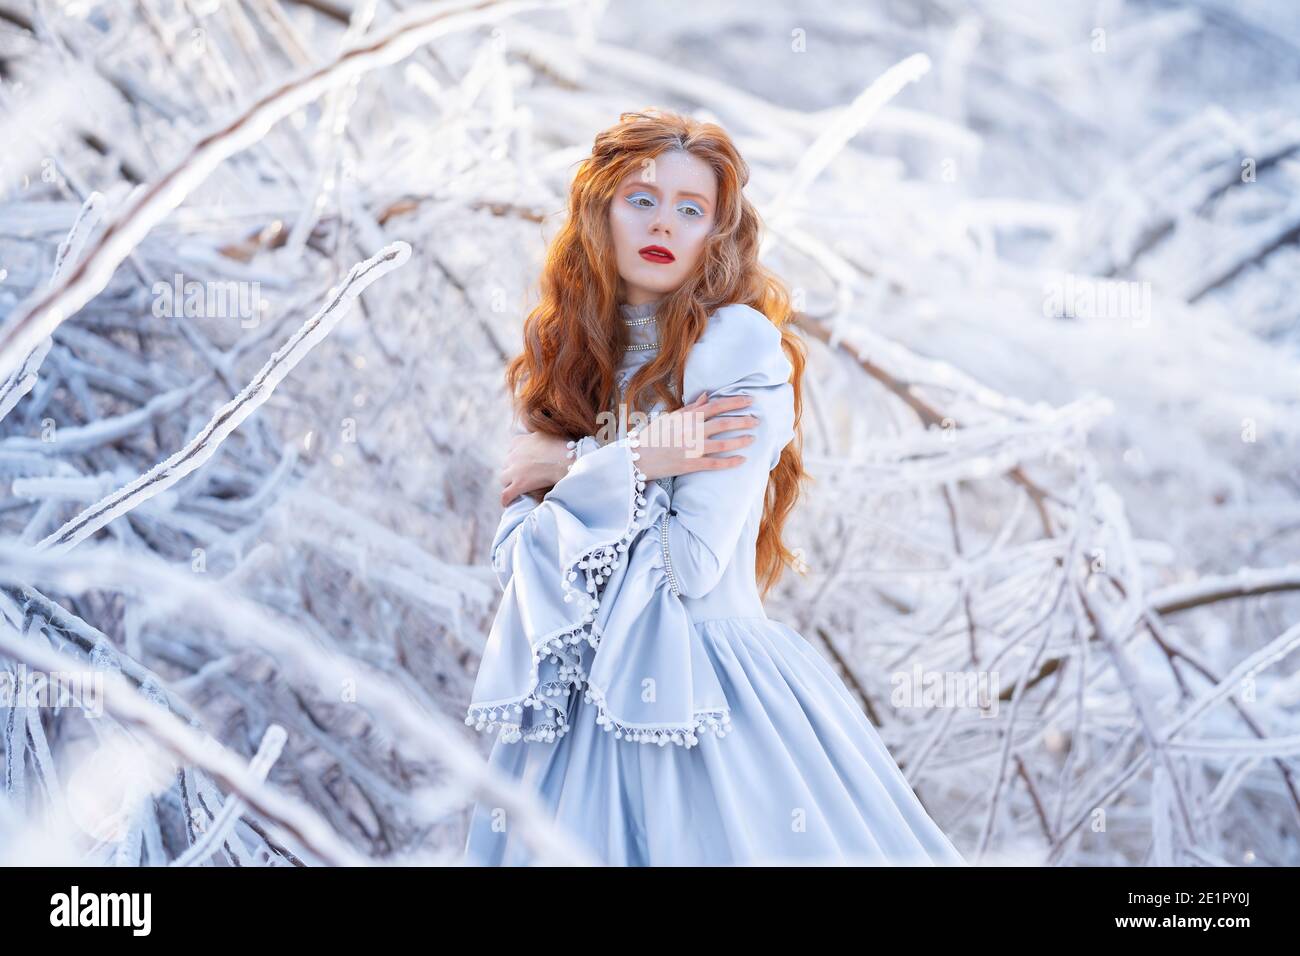 Une jeune femme à tête rouge, une princesse, marche dans une forêt d'hiver en robe bleue. Banque D'Images